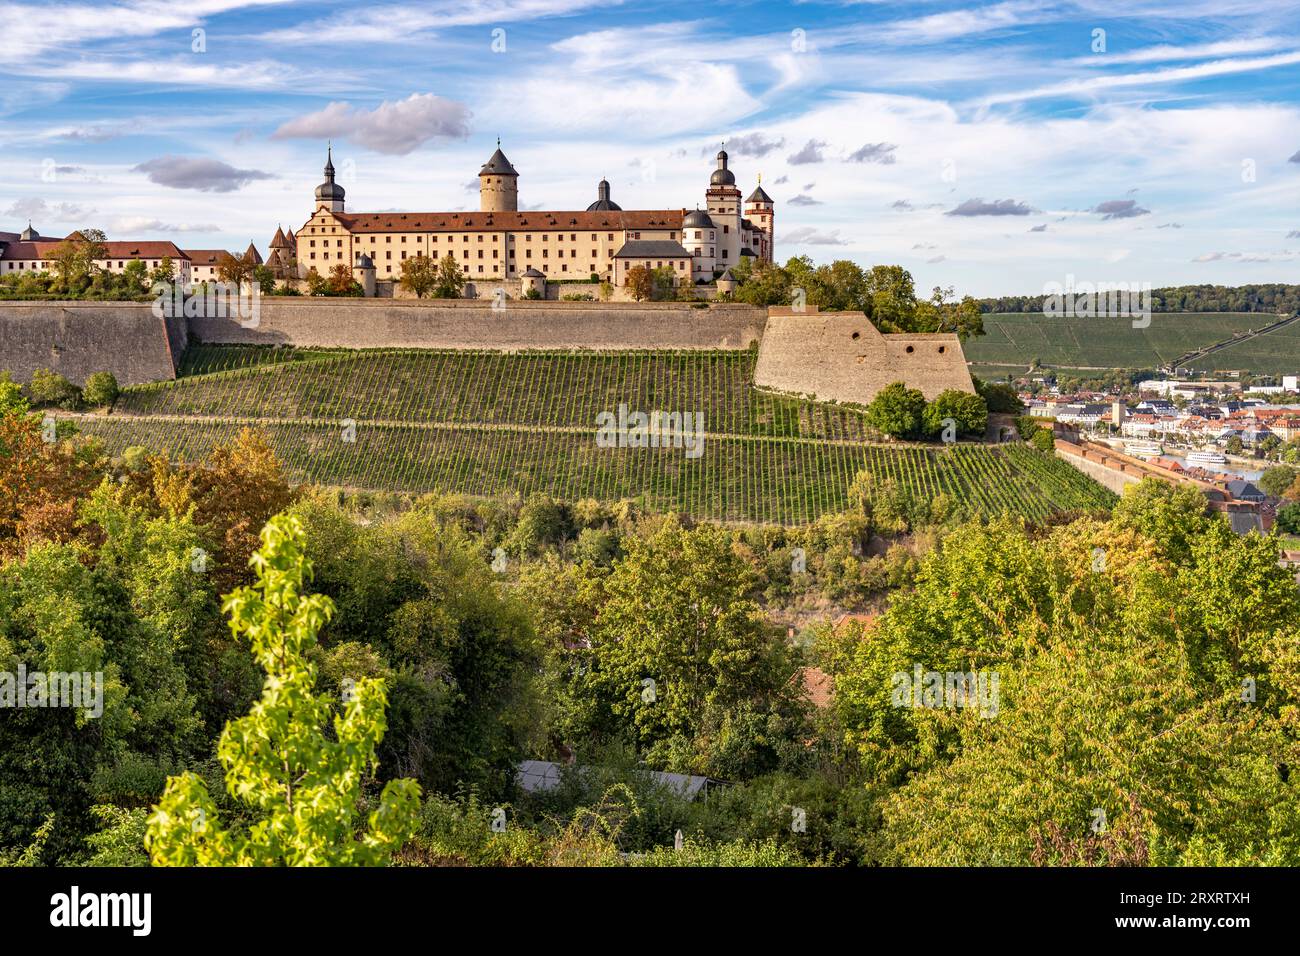 Die Festung Marienberg und Weinberge in Würzburg, Bayern, Deutschland  |  Marienberg Fortress and vineyards in Wuerzburg, Bavaria, Germany Stock Photo